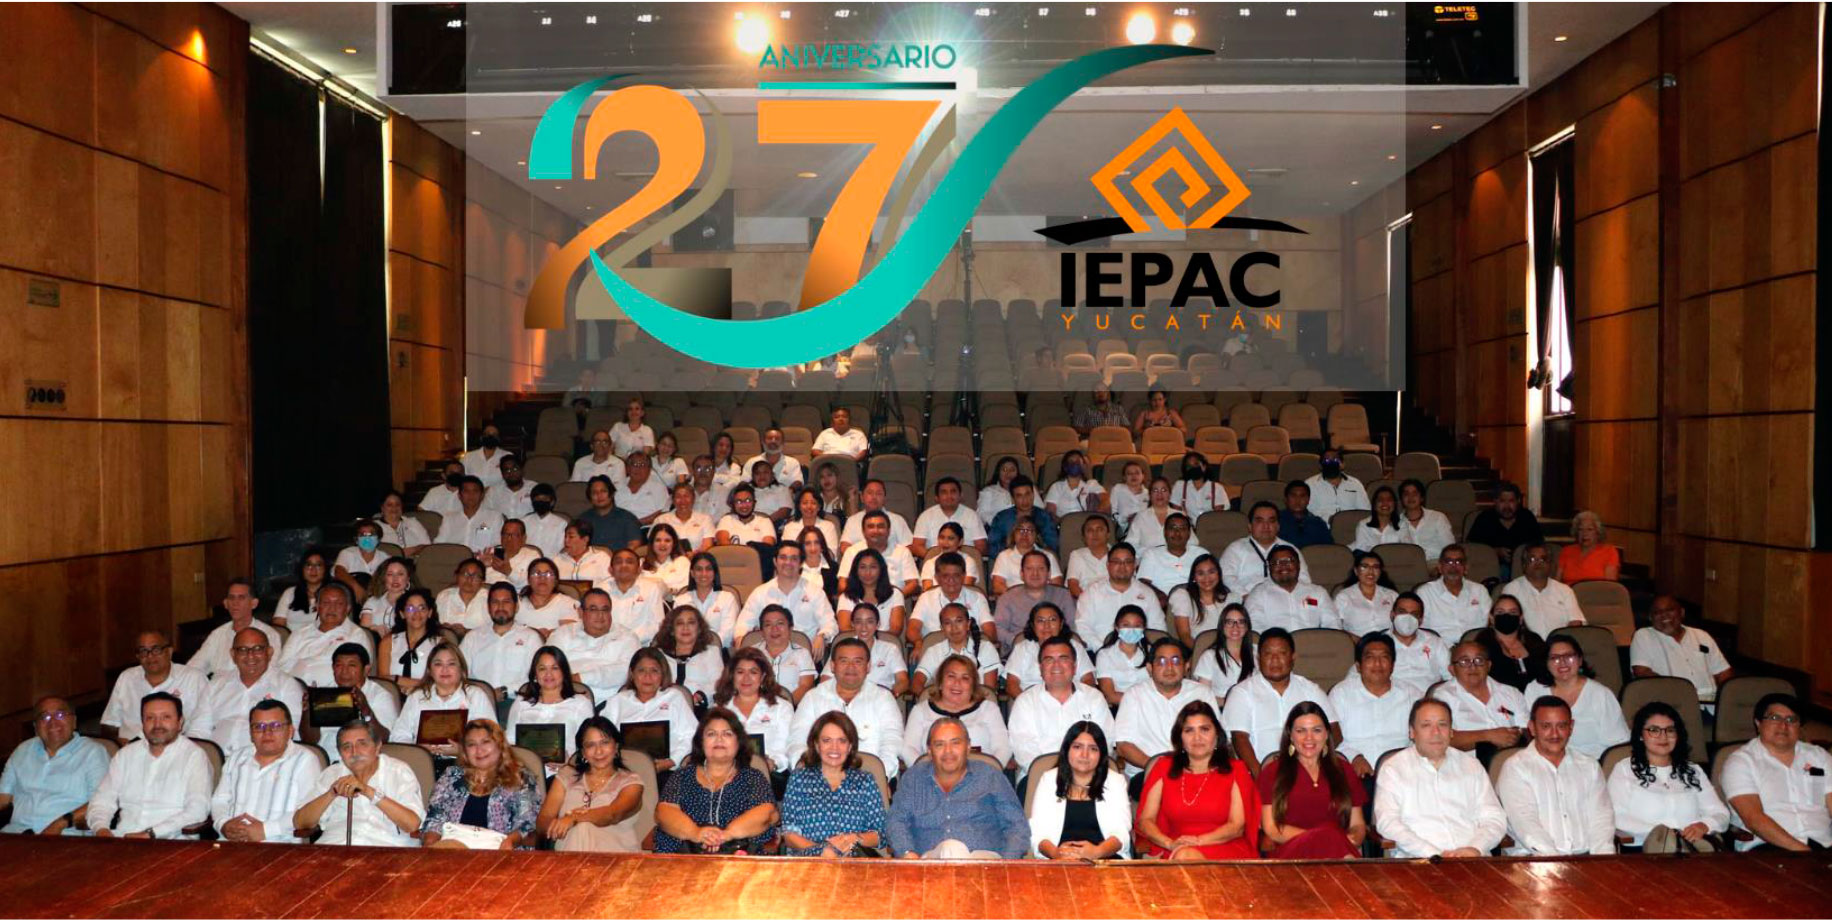 Celebra IEPAC Yucatán 27 años fortaleciendo la dem...